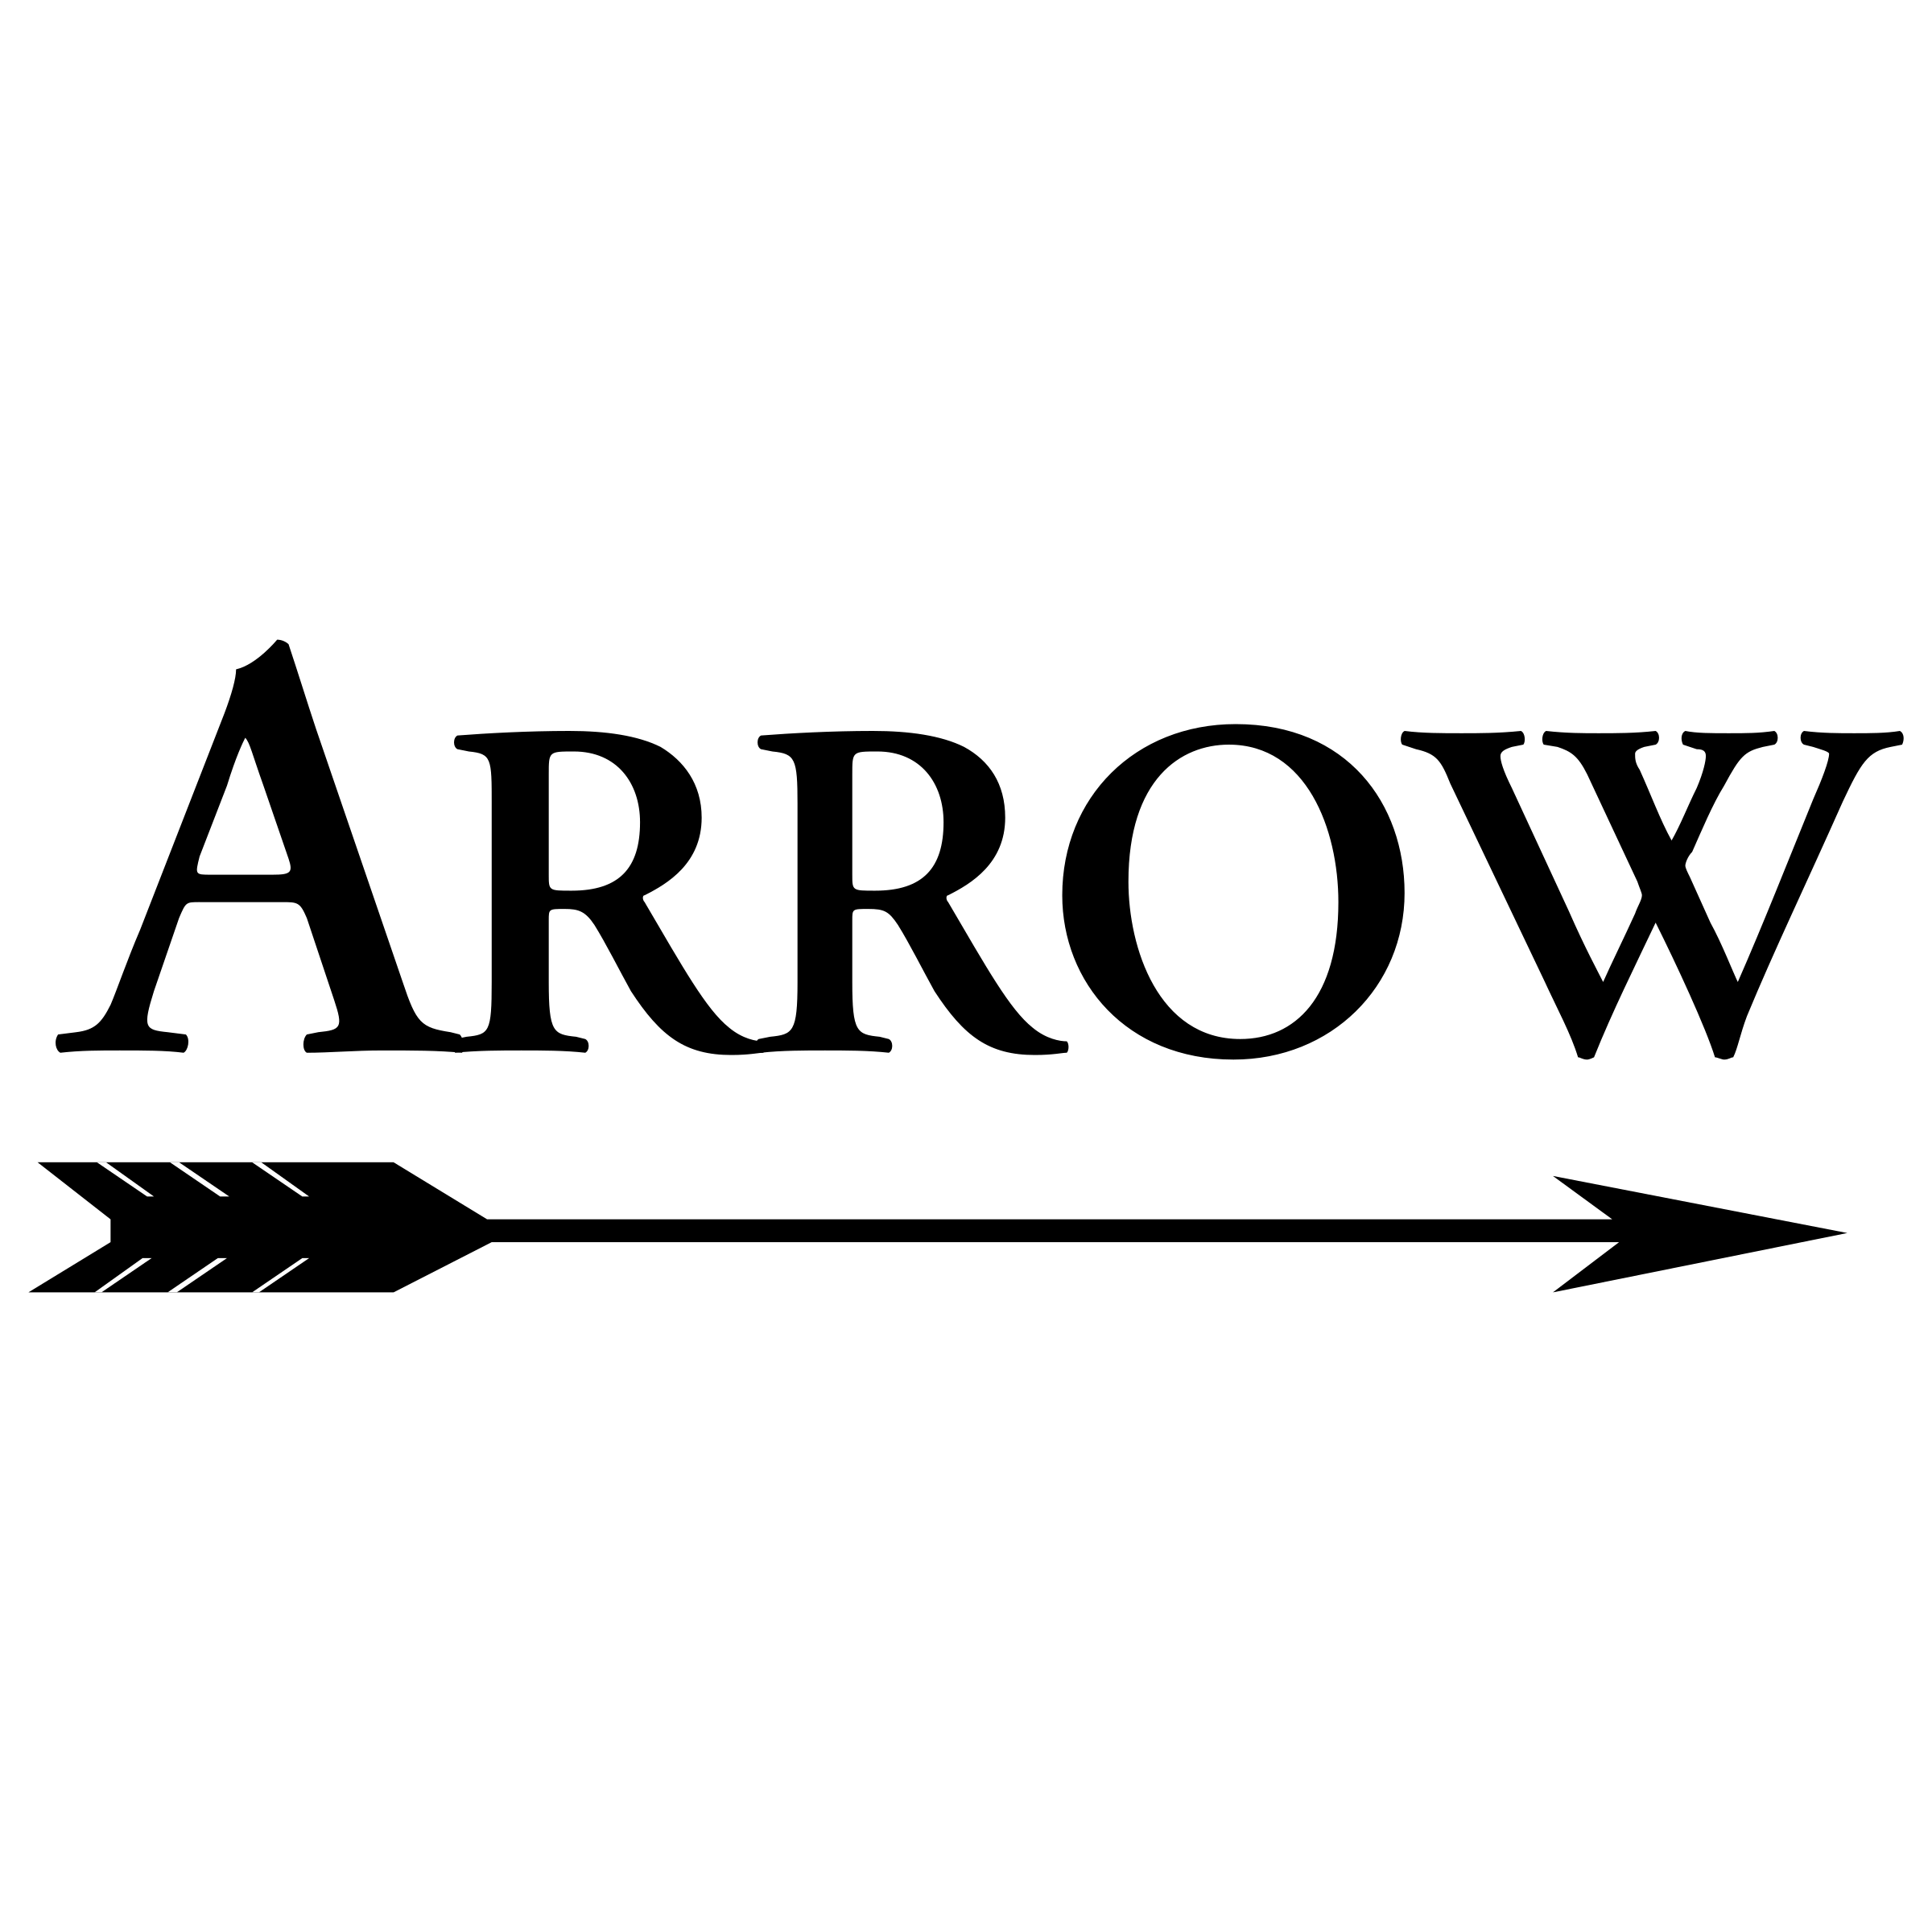 Transparent Arrow Logo - Arrow 02 Logo PNG Transparent & SVG Vector - Freebie Supply